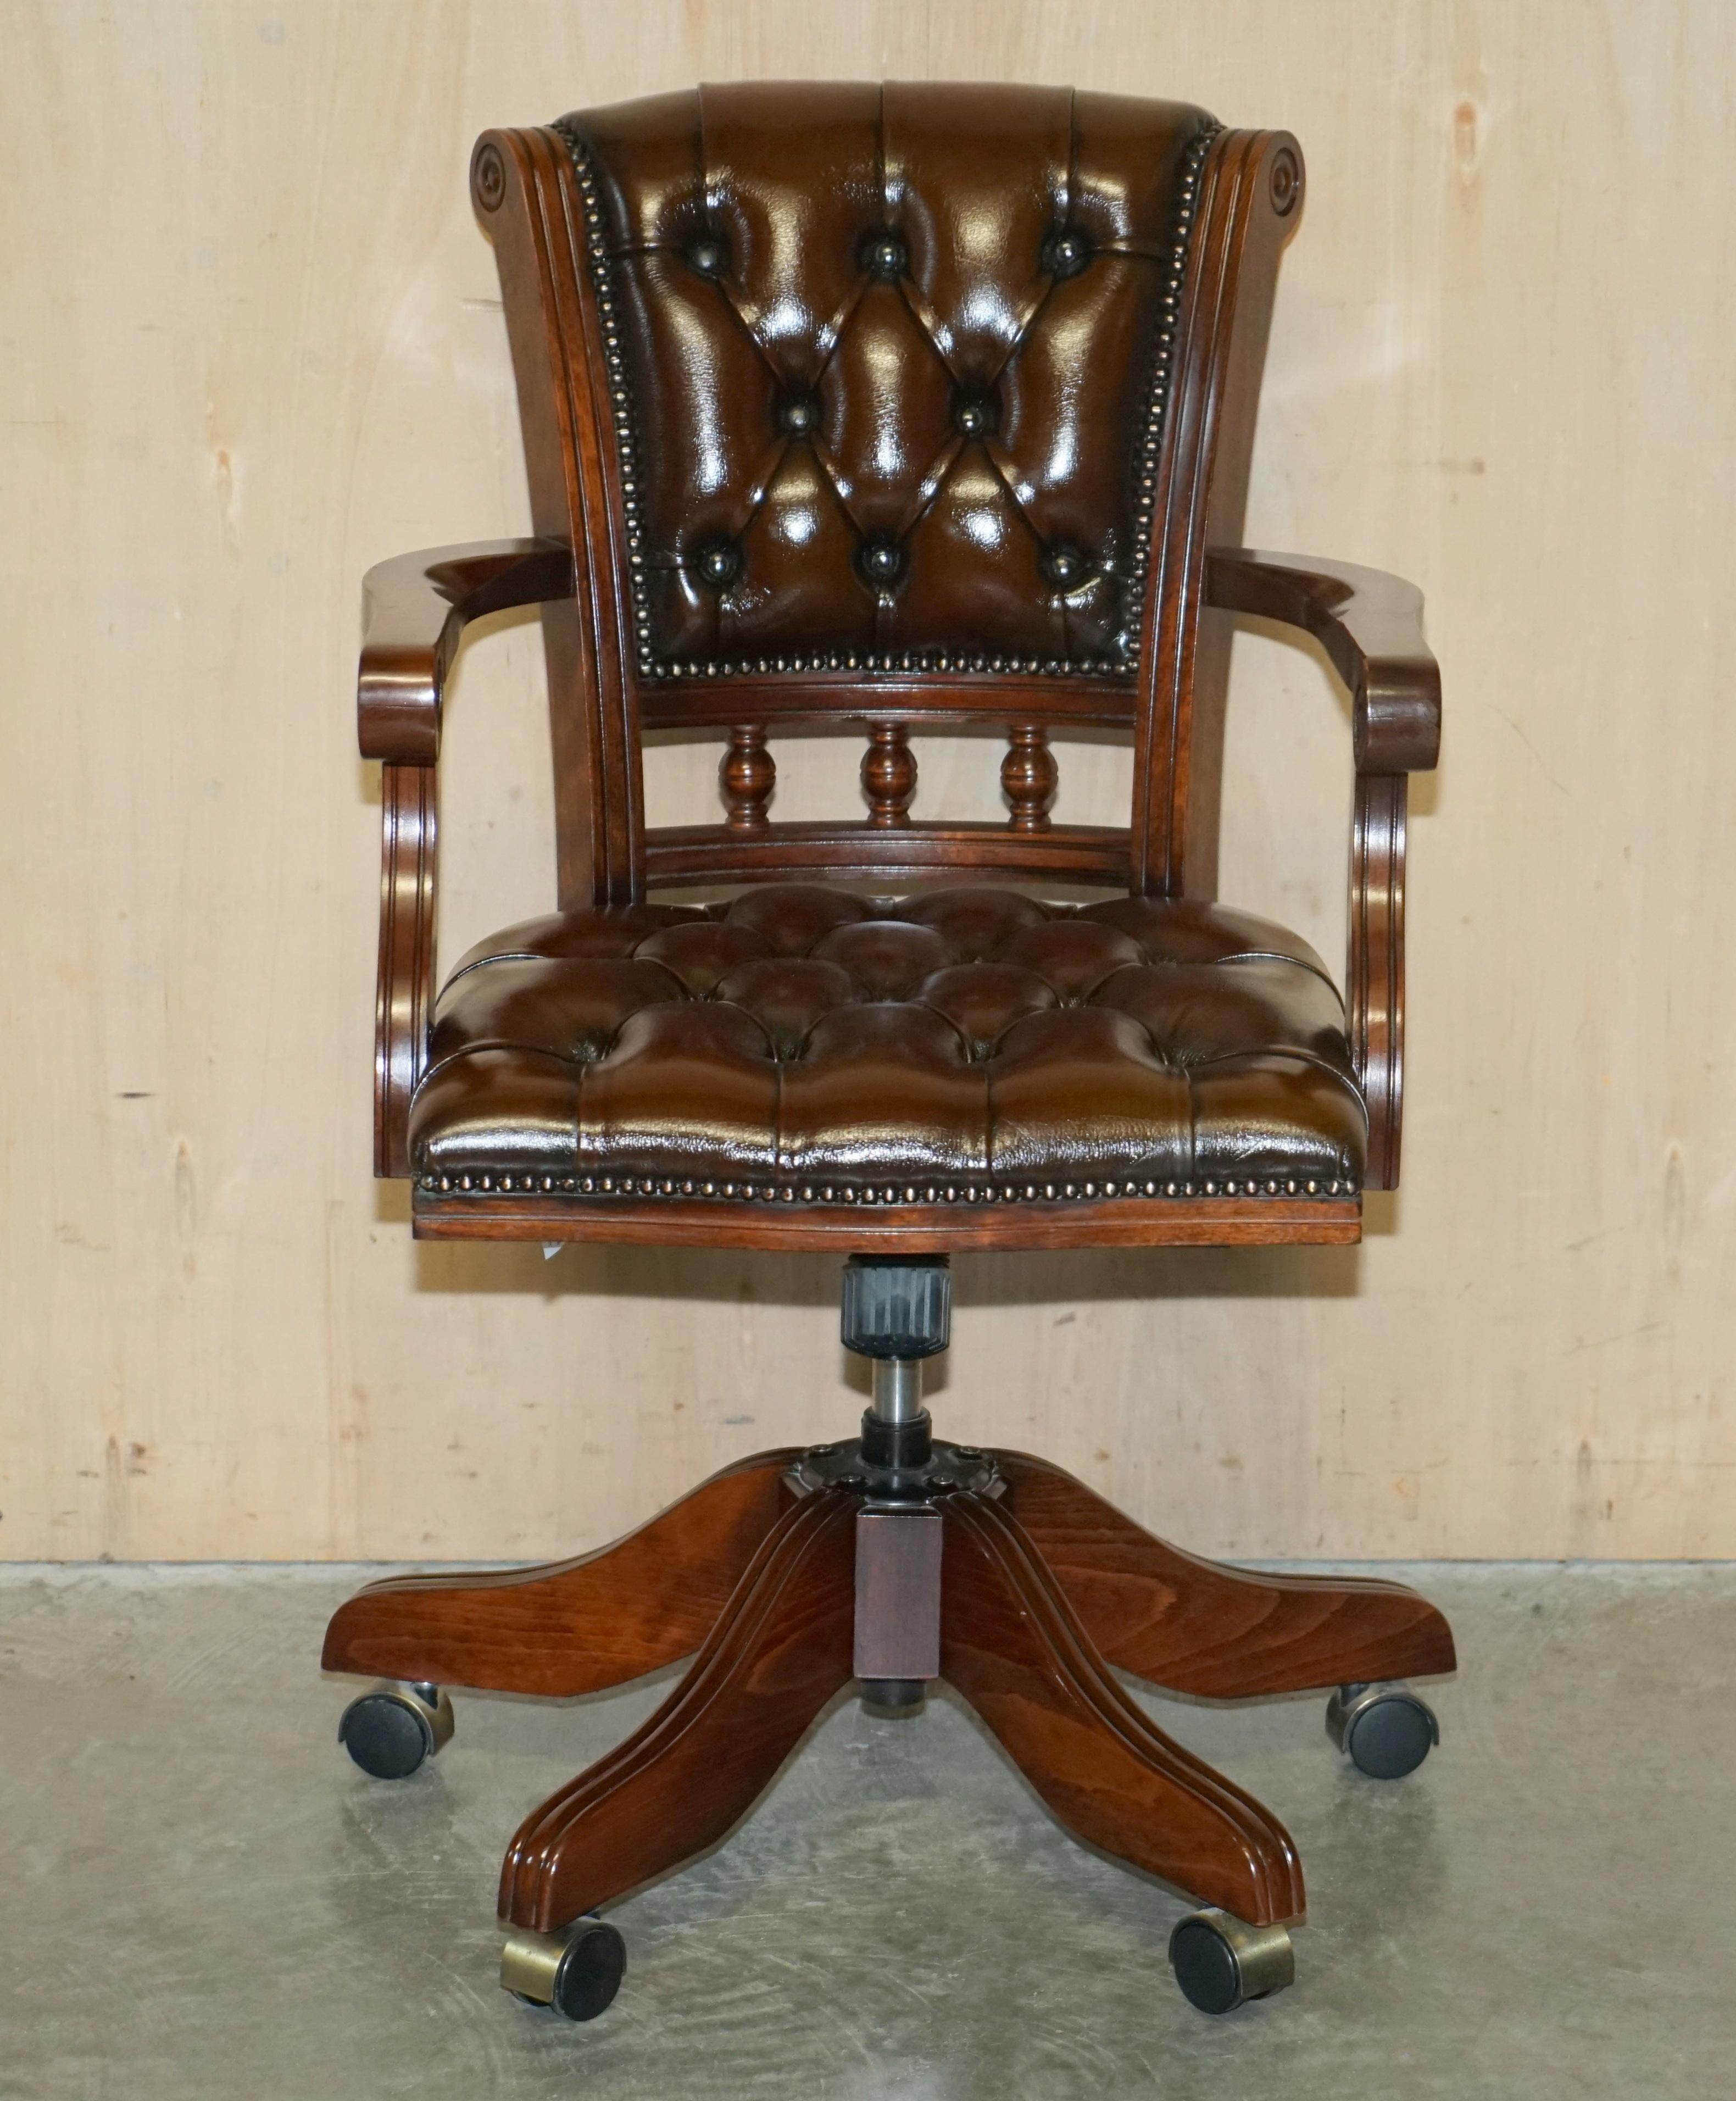 Wir freuen uns, diesen schönen, vollständig restaurierten, originalen Chesterfield-Stuhl mit Buchengestell und handgefärbtem, zigarrenbraunem Leder zum Verkauf anzubieten.

Ein sehr gut aussehender, gut gemachter und bequemer Regiestuhl, der Stuhl